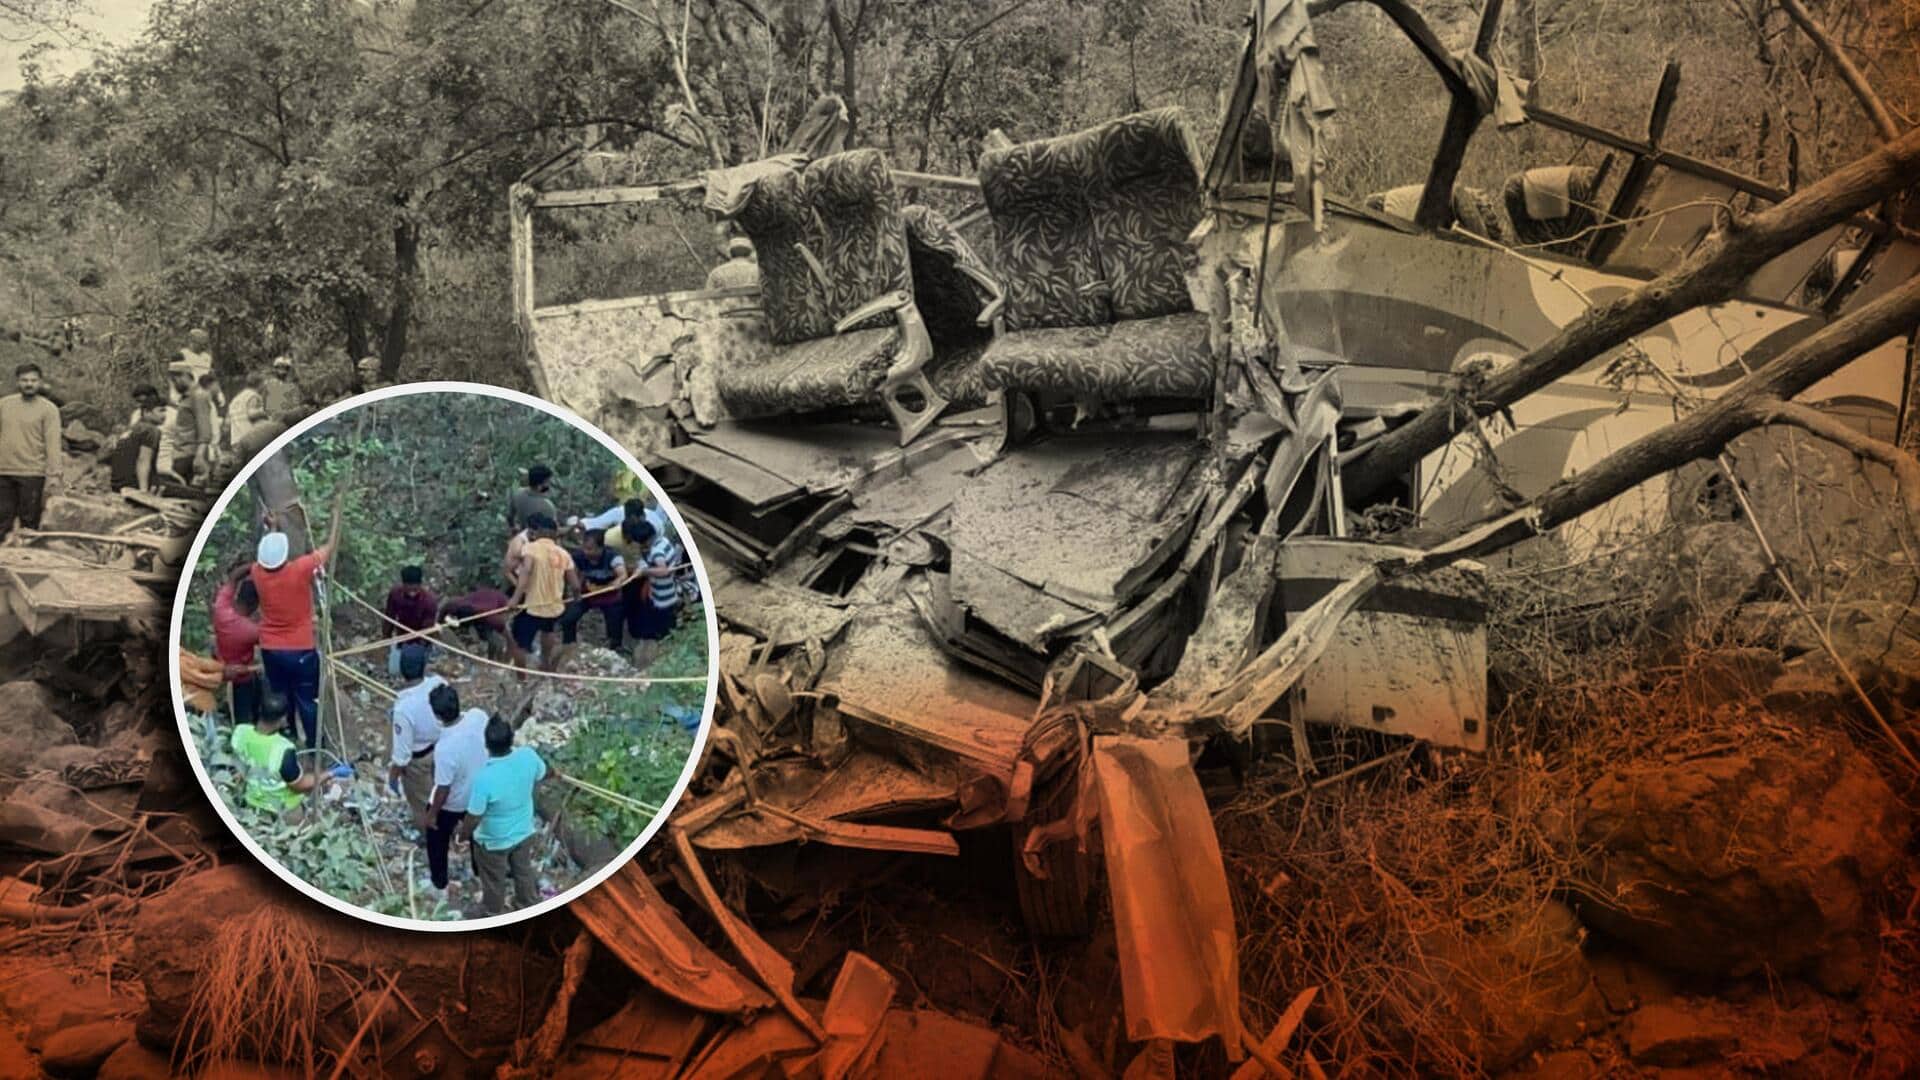 महाराष्ट्र: मुंबई-पुणे राजमार्ग पर भीषण सड़क हादसे में 12 लोगों की मौत, कई घायल